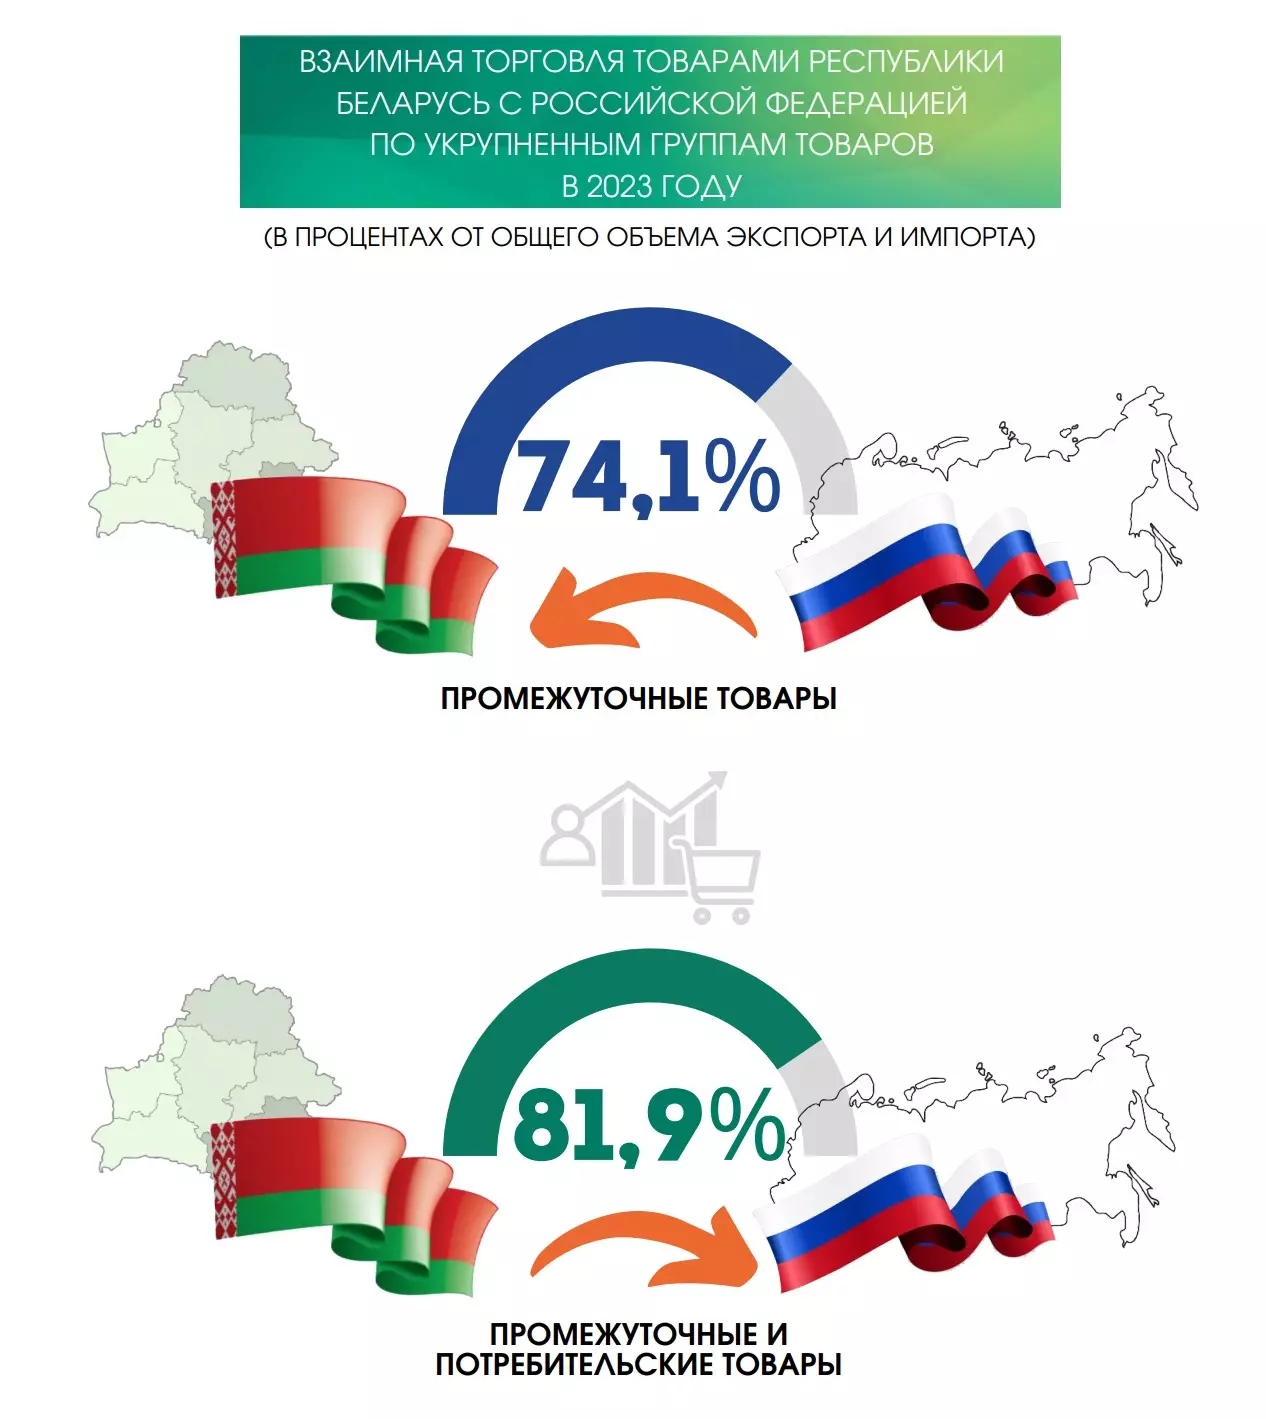 Внешняя торговля Беларуси зависит от России